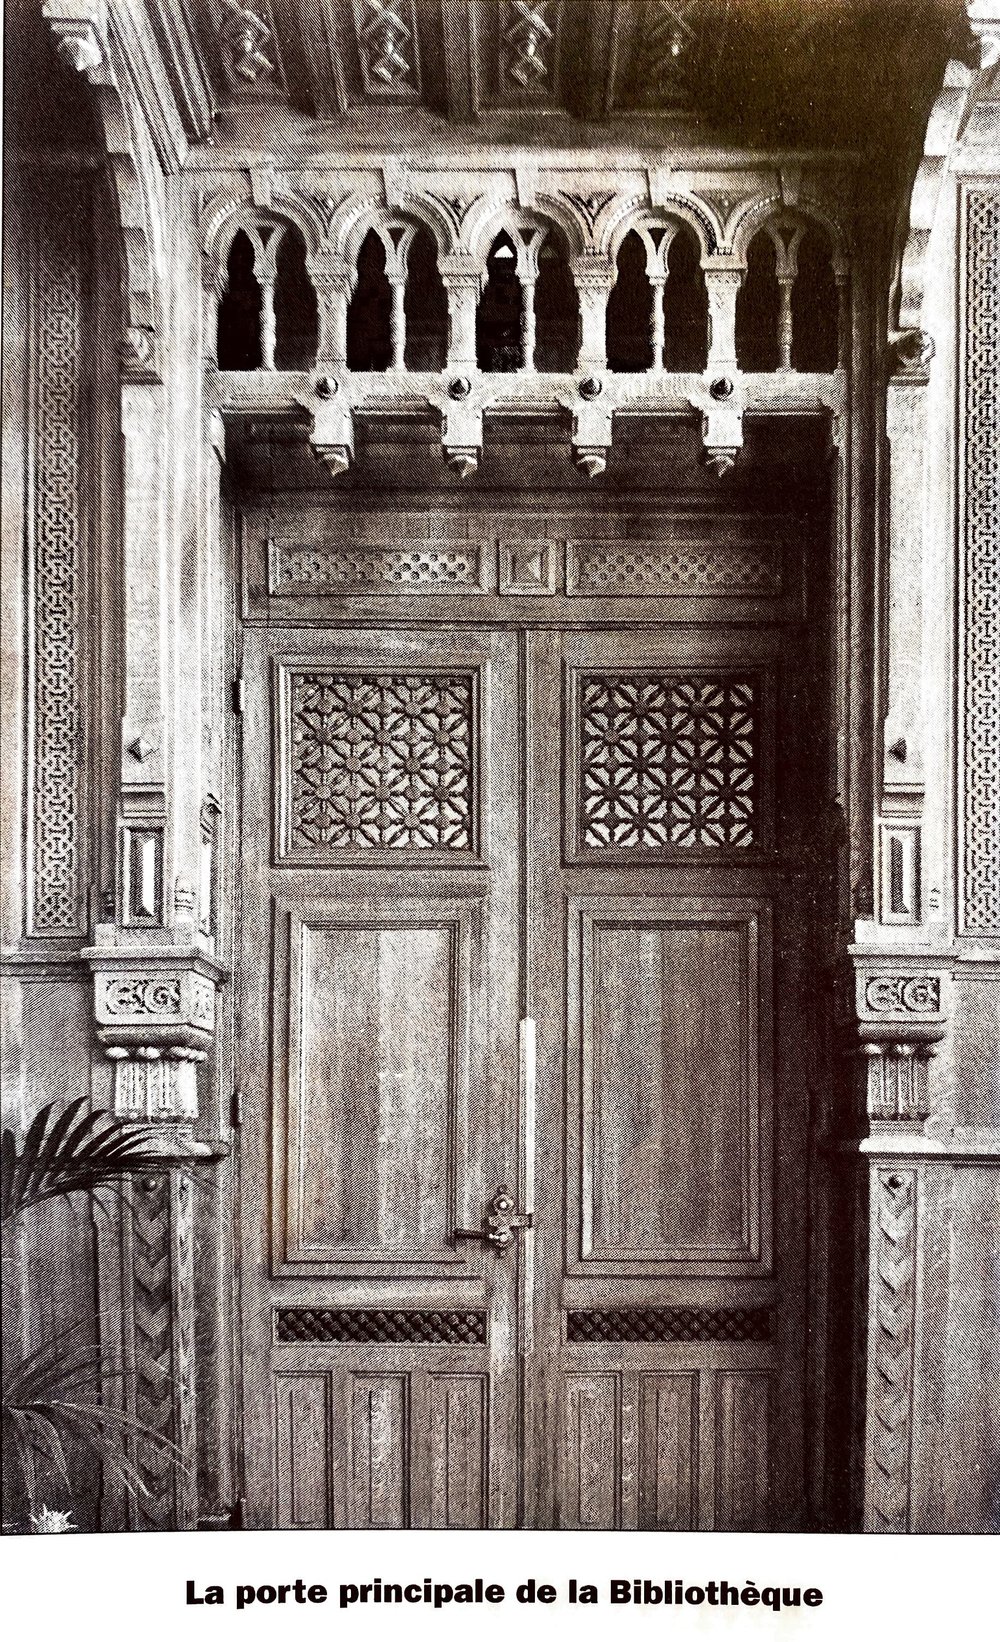 Oriental library door c. 1960s